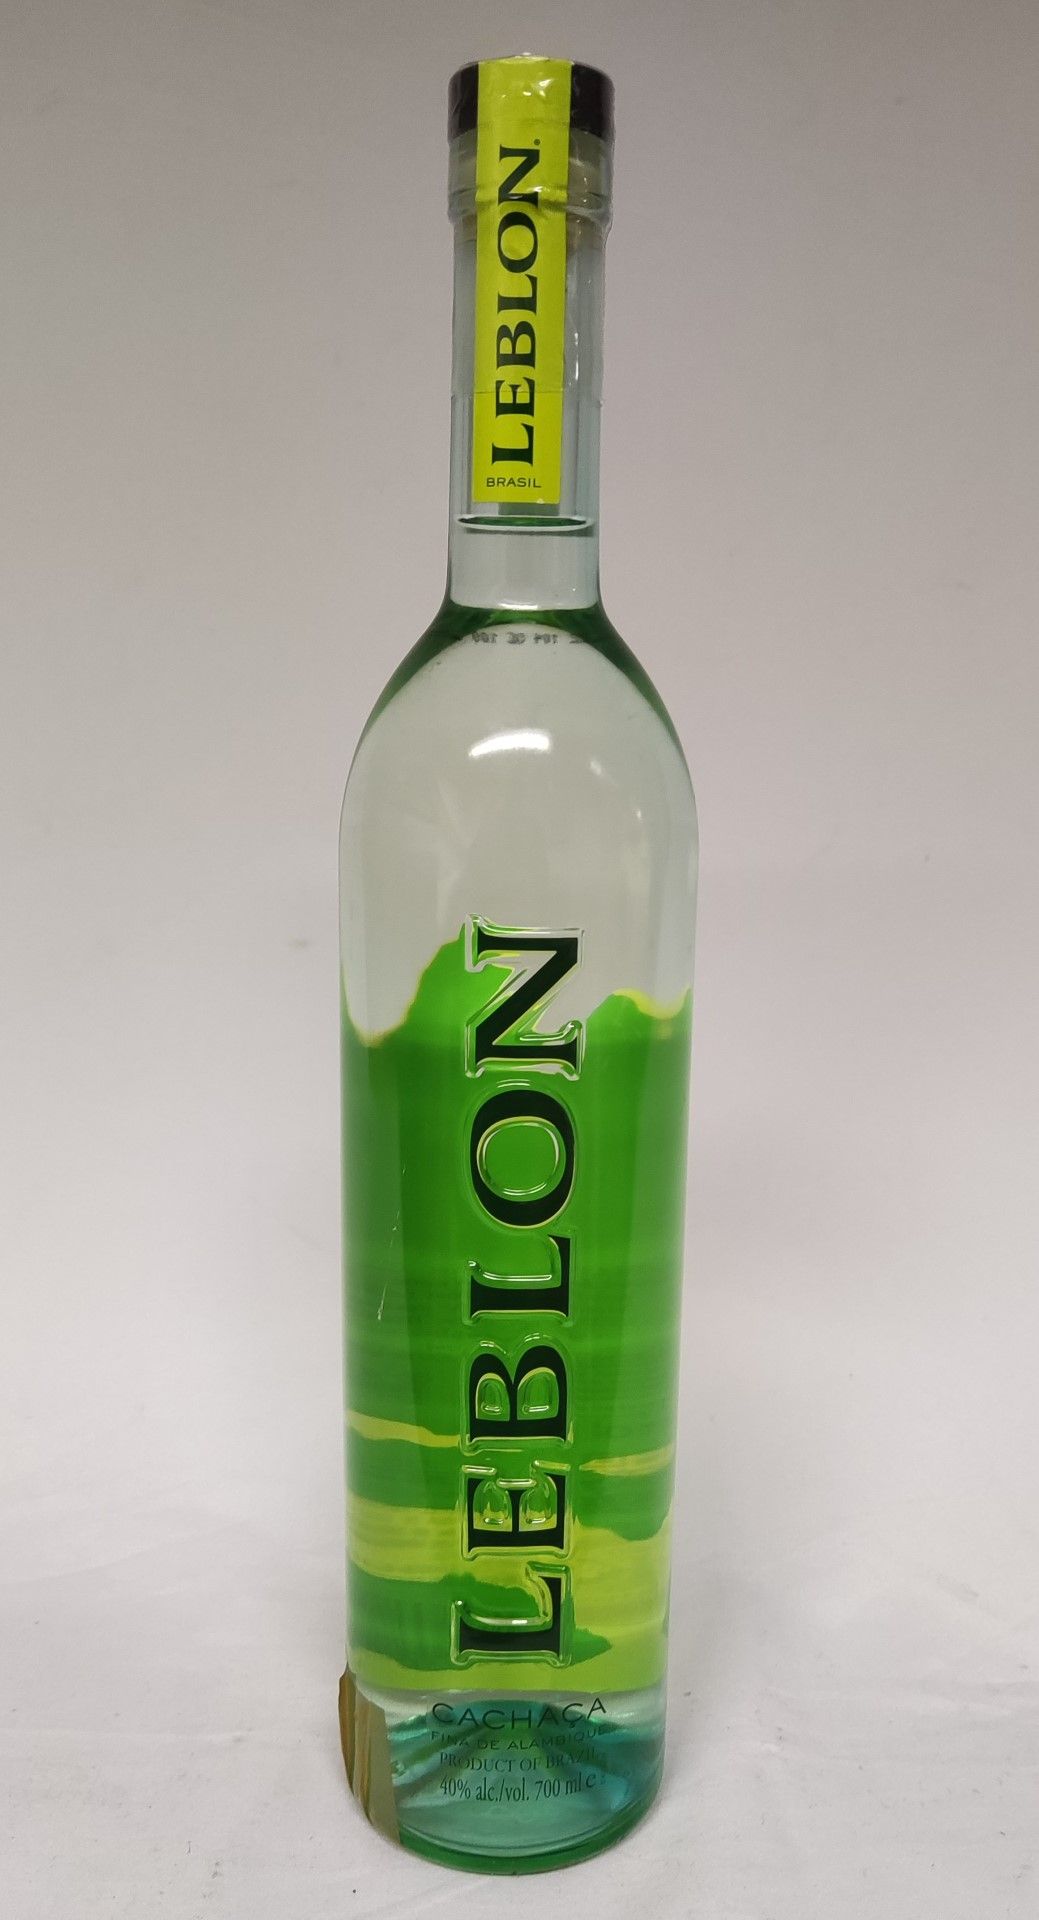 1 x Bottle of Leblon Cachaca Fina De Alambique - Product Of Brazil - RRP £42